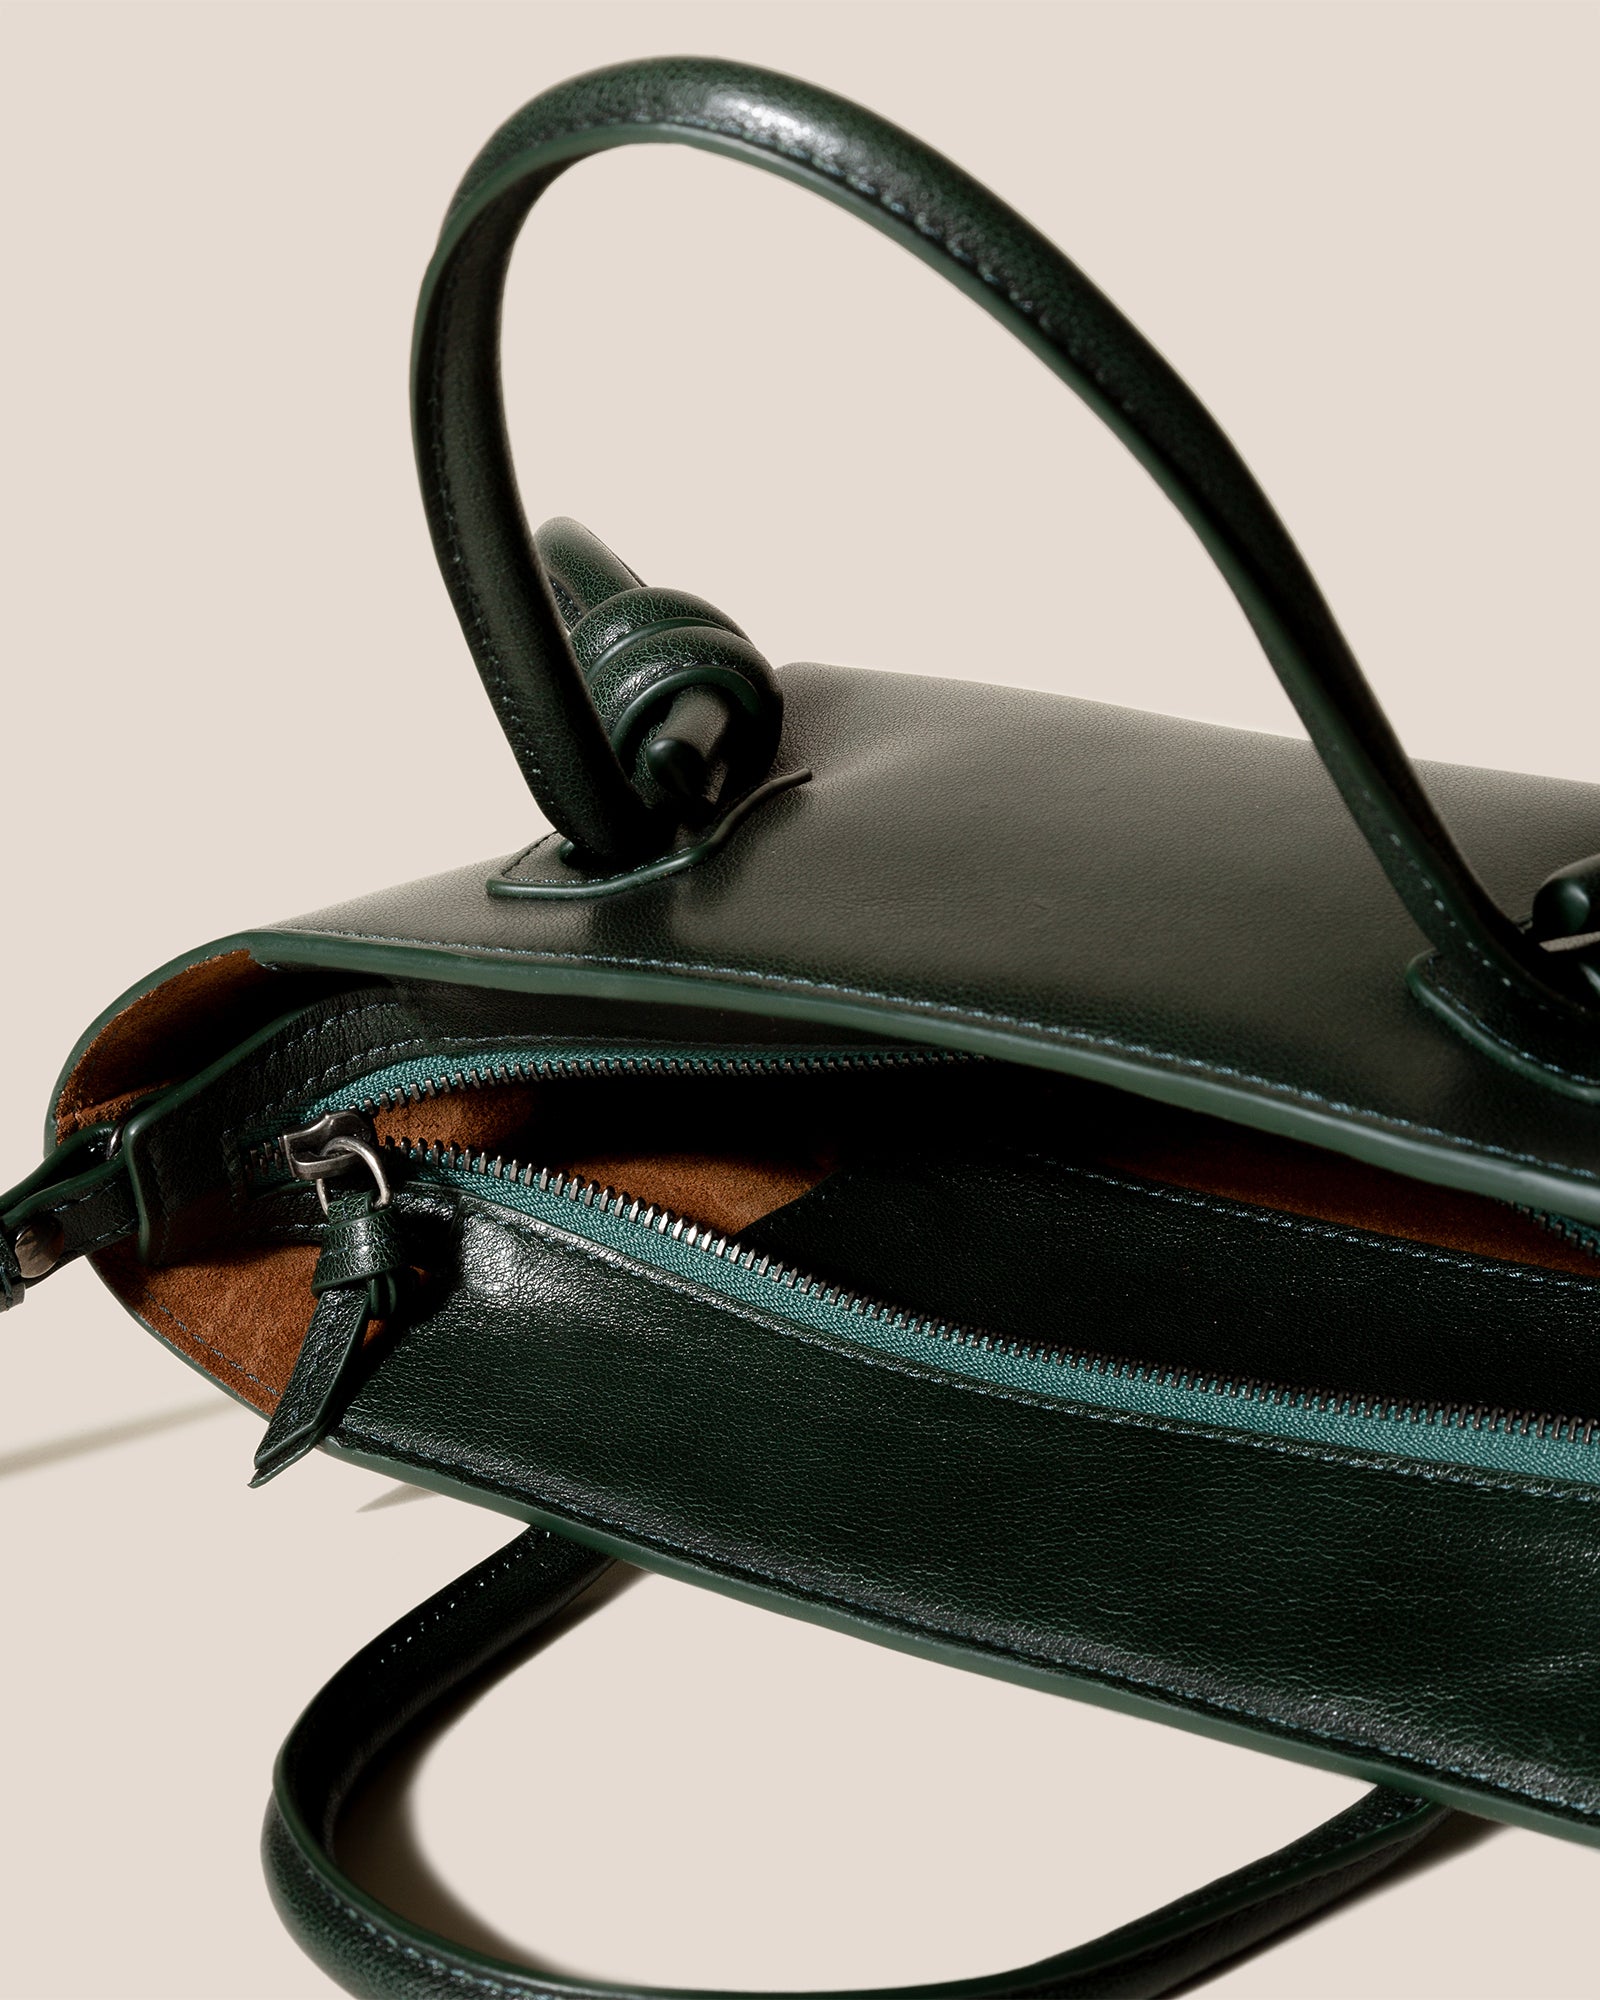 Celine Mini Triomphe Bowling Bag - Black Handle Bags, Handbags